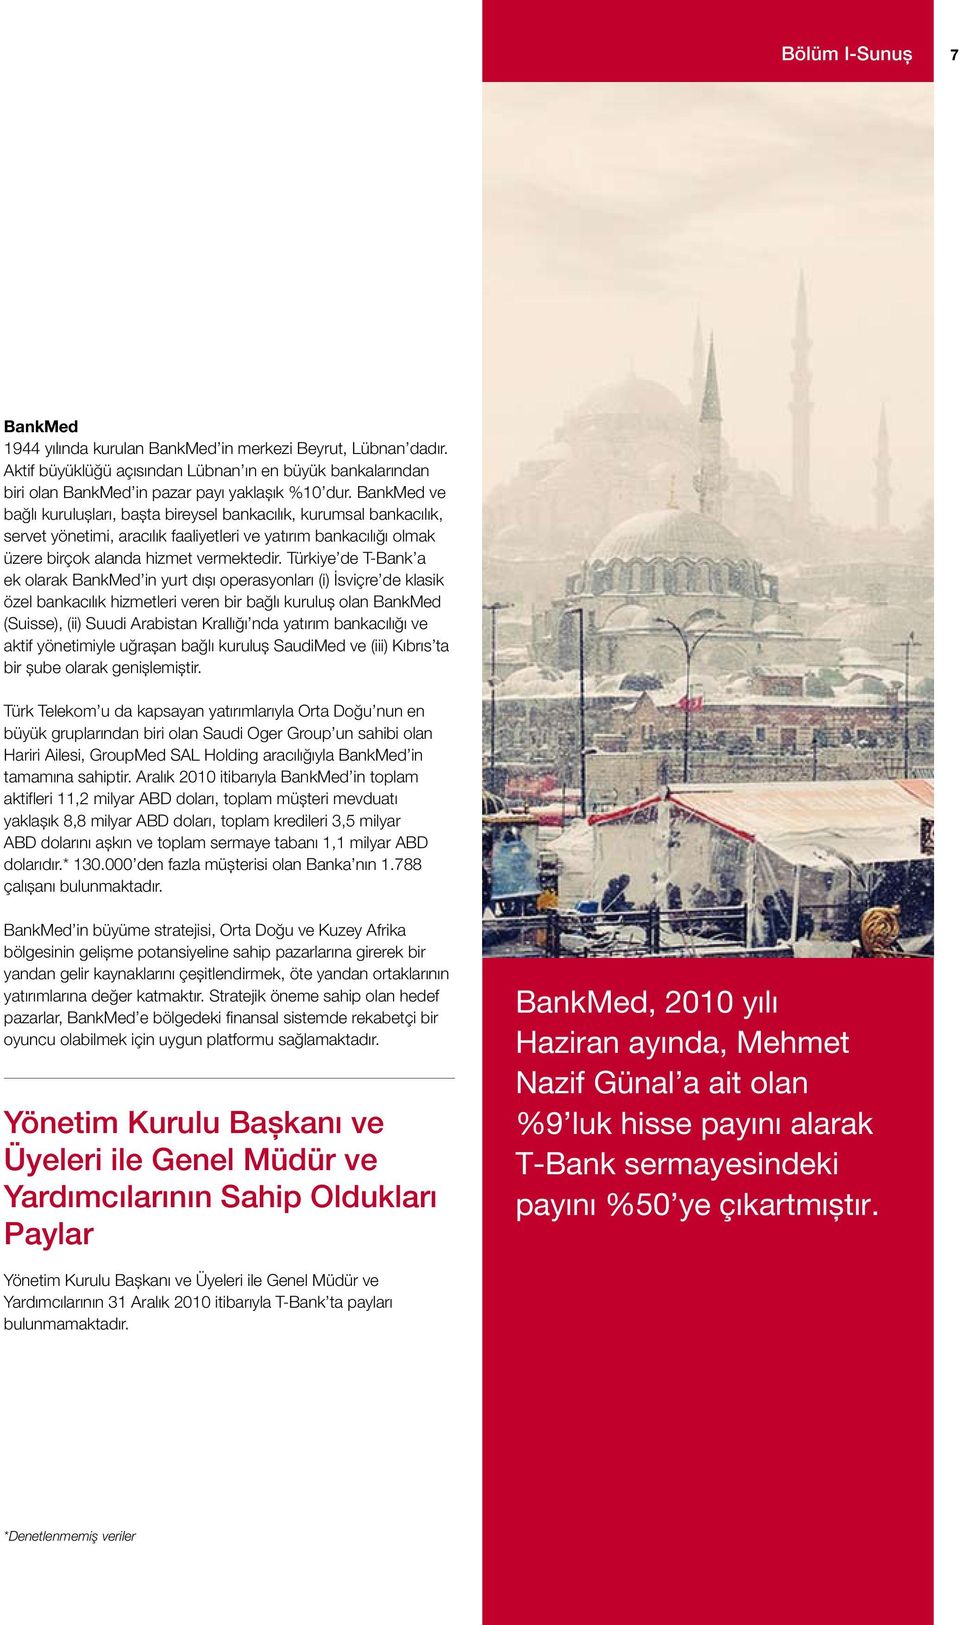 Türkiye de T-Bank a ek olarak BankMed in yurt dışı operasyonları (i) İsviçre de klasik özel bankacılık hizmetleri veren bir bağlı kuruluş olan BankMed (Suisse), (ii) Suudi Arabistan Krallığı nda